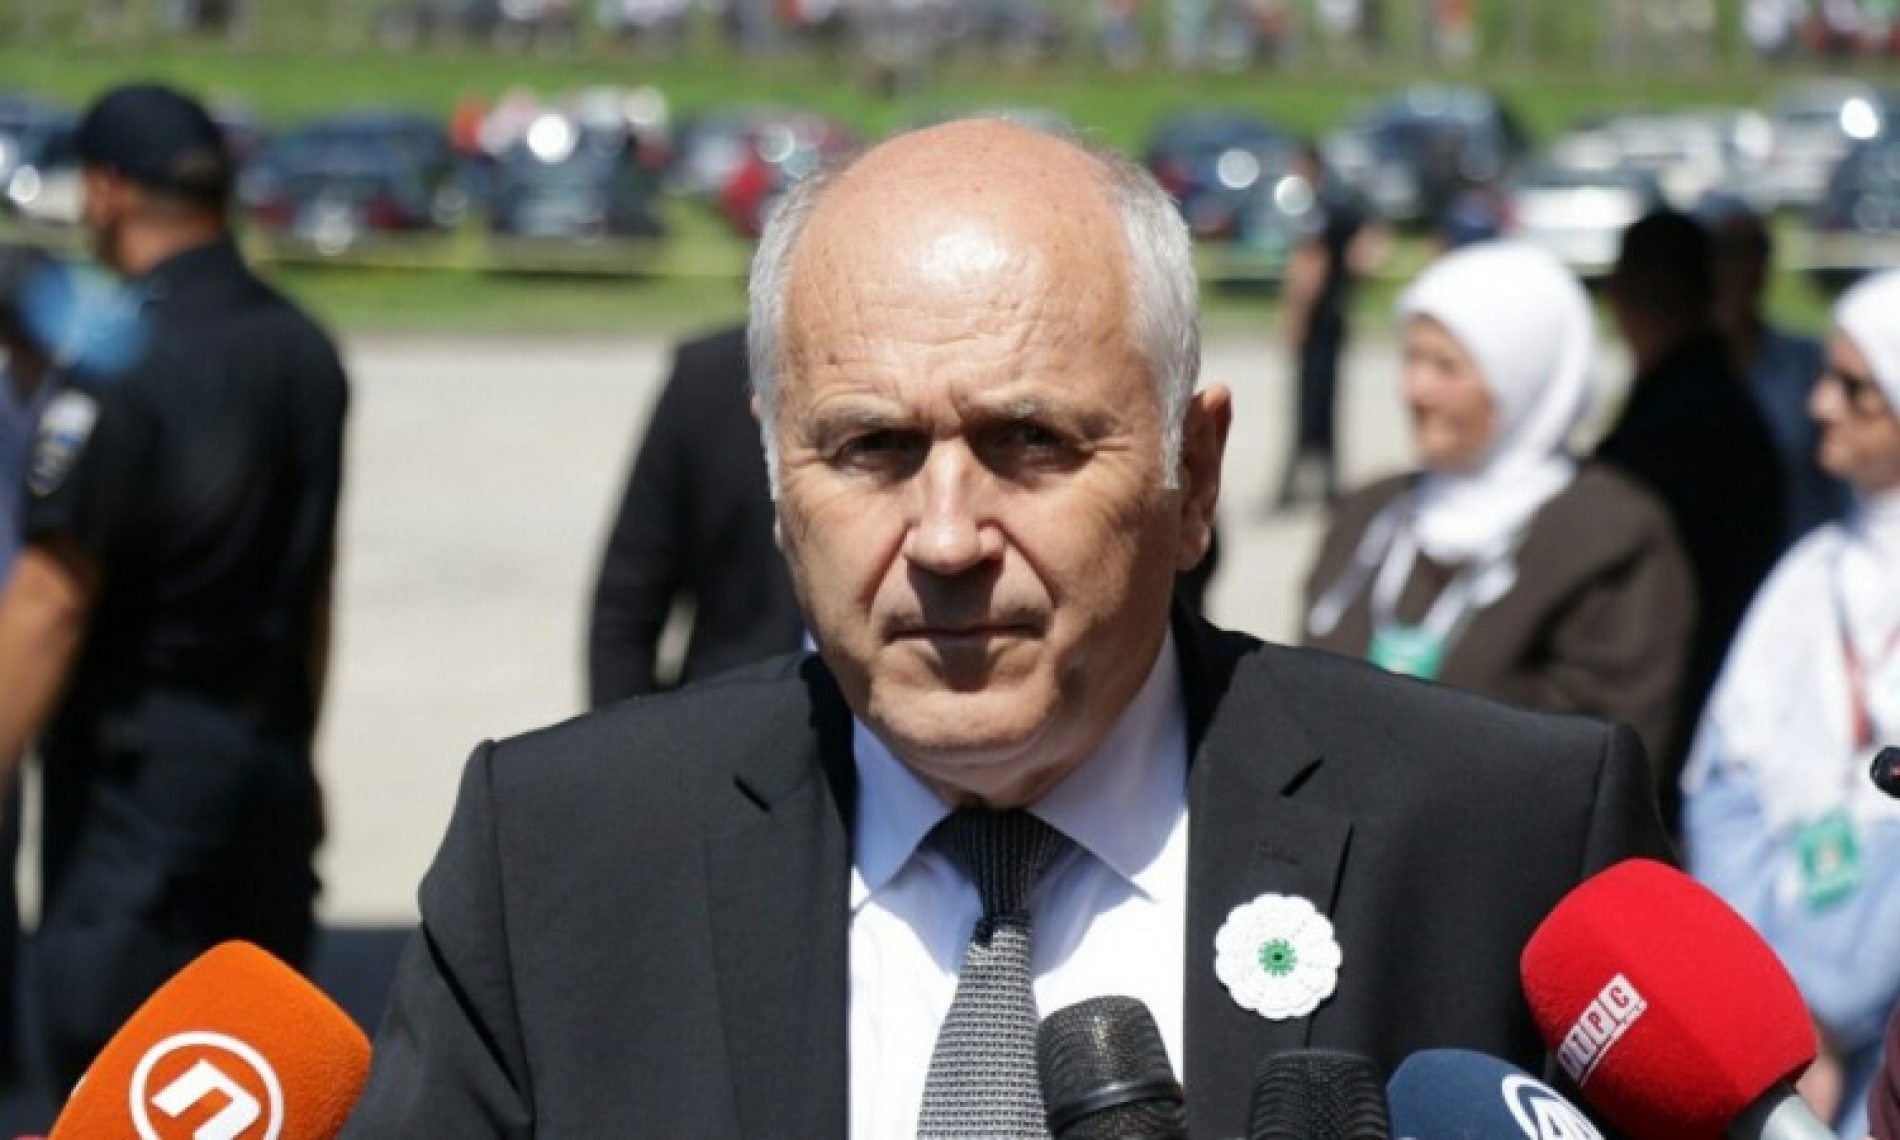 Inzko : Iduće godine Bosna i Hercegovina će dobiti zakon o negiranju genocida